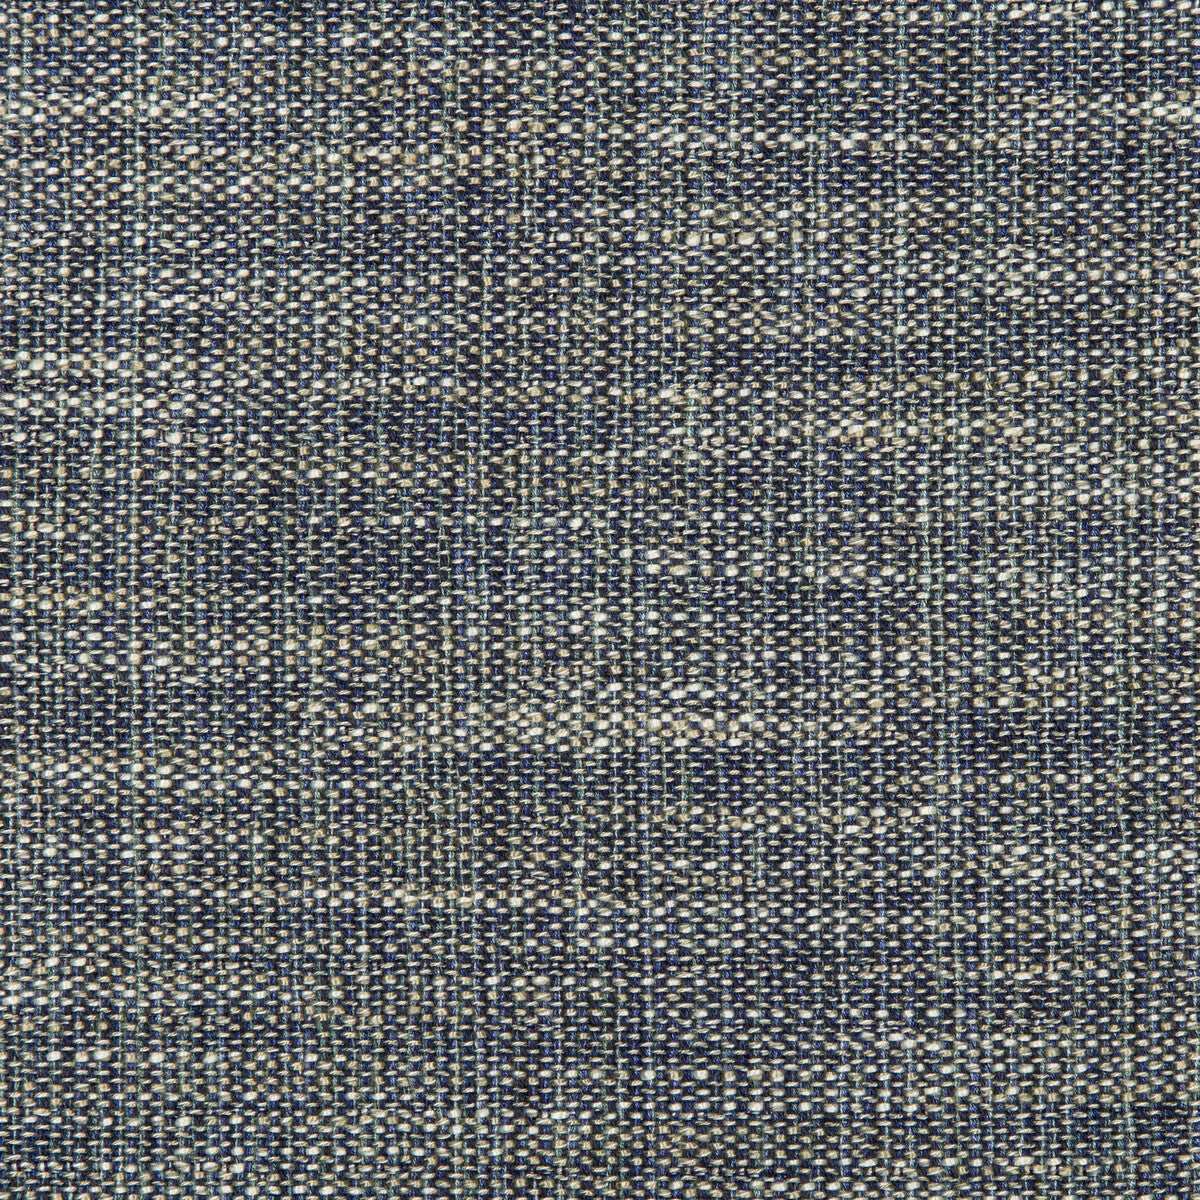 Kravet Design fabric in 35658-51 color - pattern 35658.51.0 - by Kravet Design